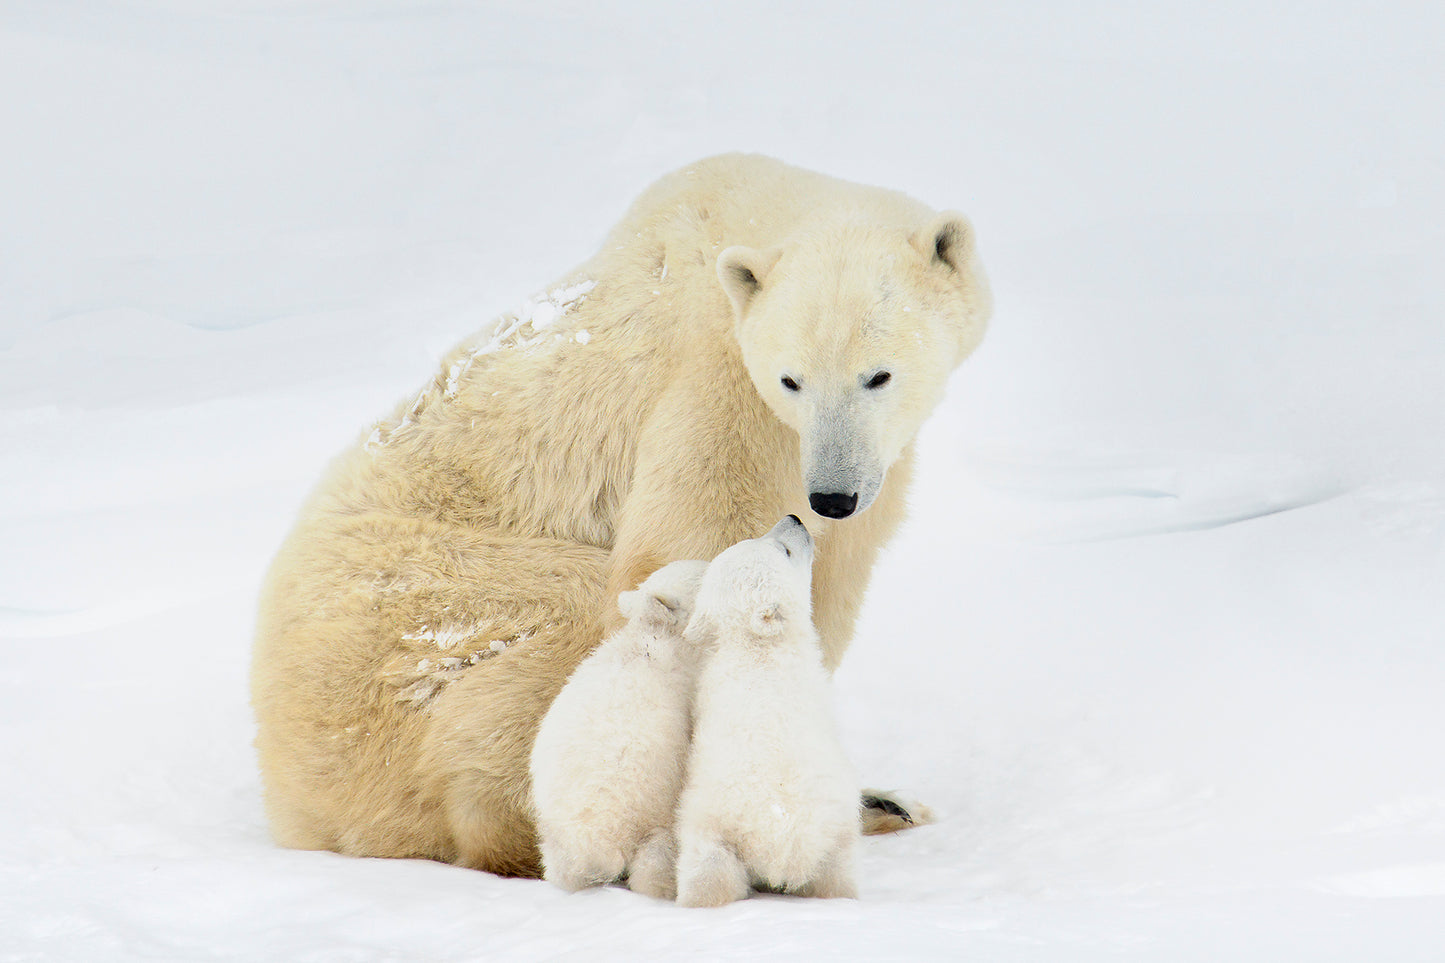 Michelle Valberg, Polar Bear Family III